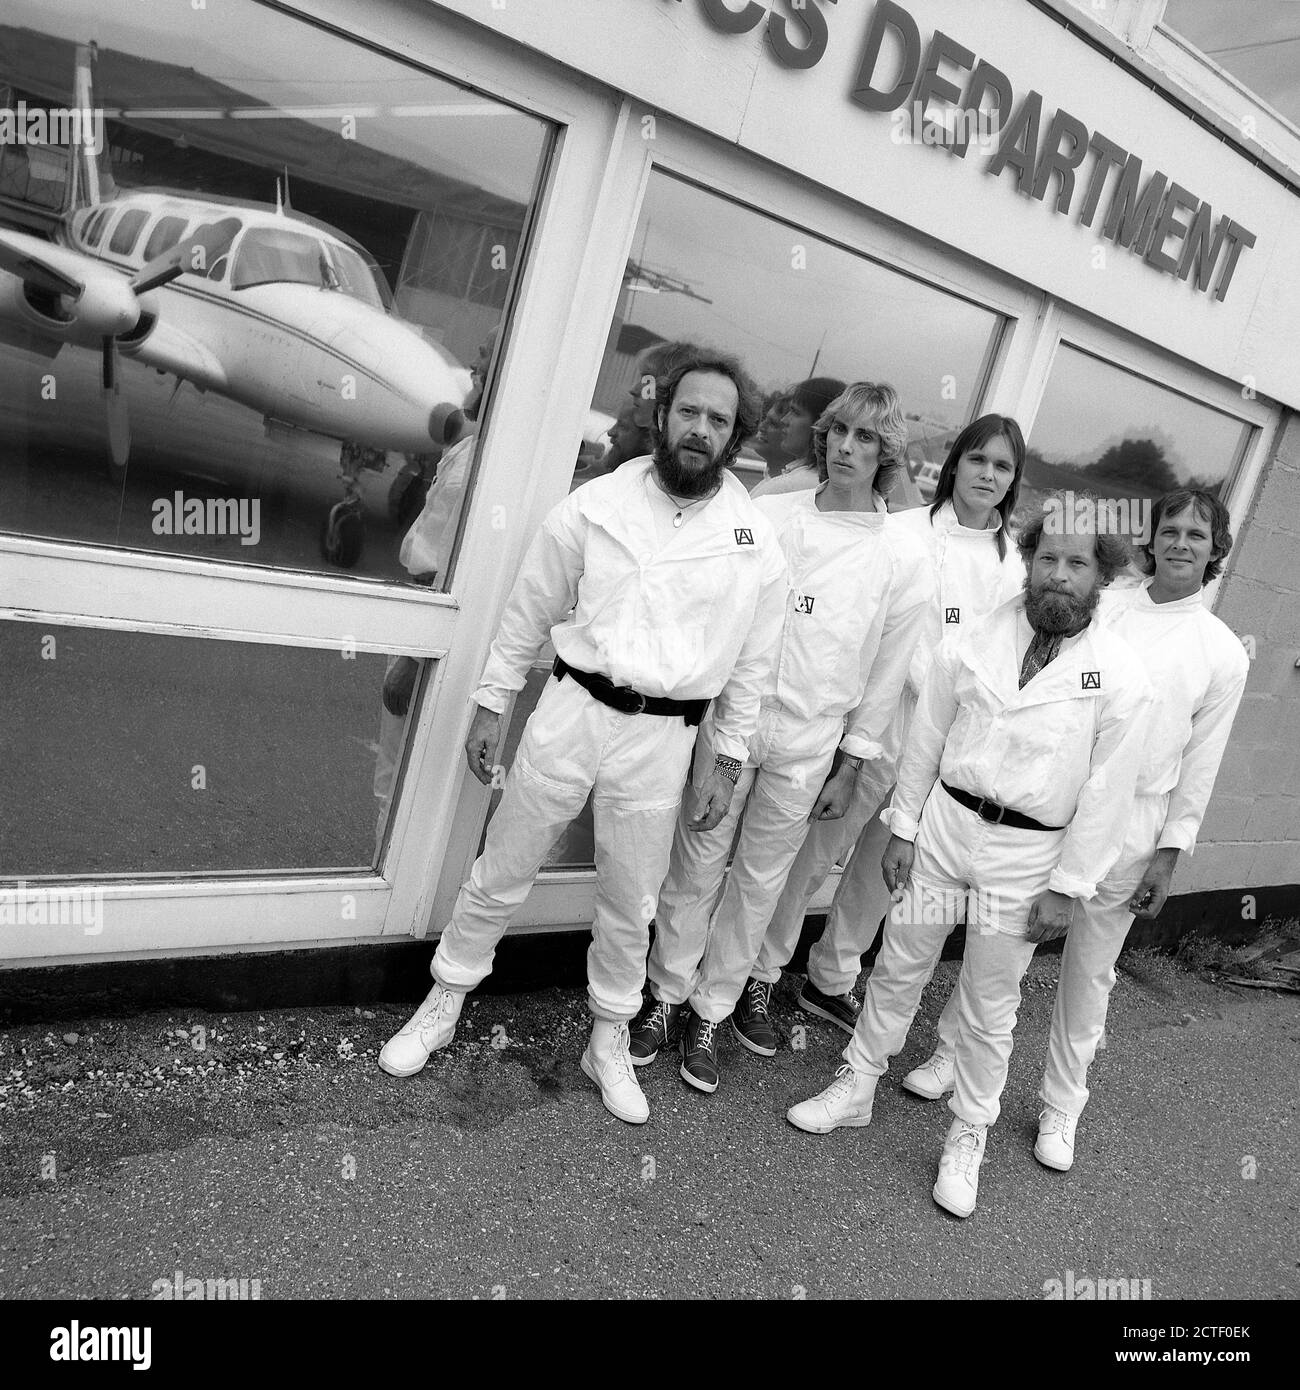 Mitglieder der britischen Rockband Jethro Tull 1980 Ian Anderson,Dave Pegg.Martin Barr,Eddie Jobso und Mark Craney. Stockfoto